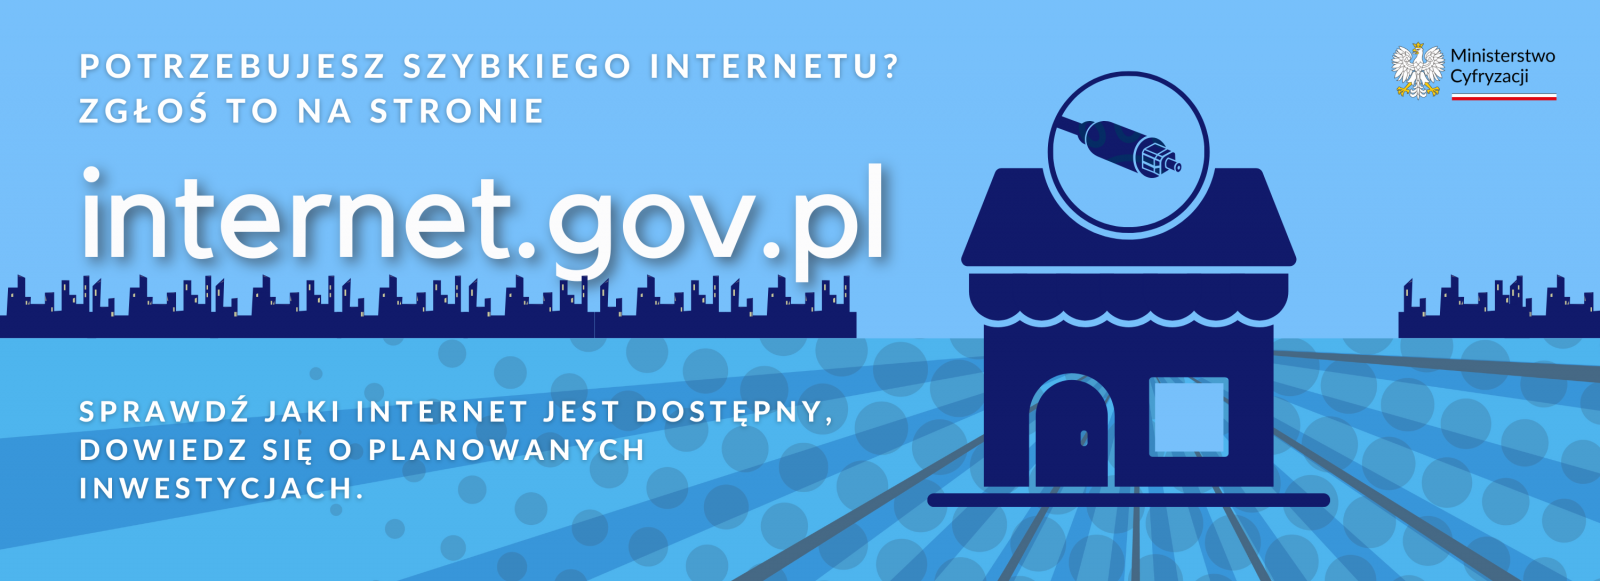 baner o treści internet.gov.pl